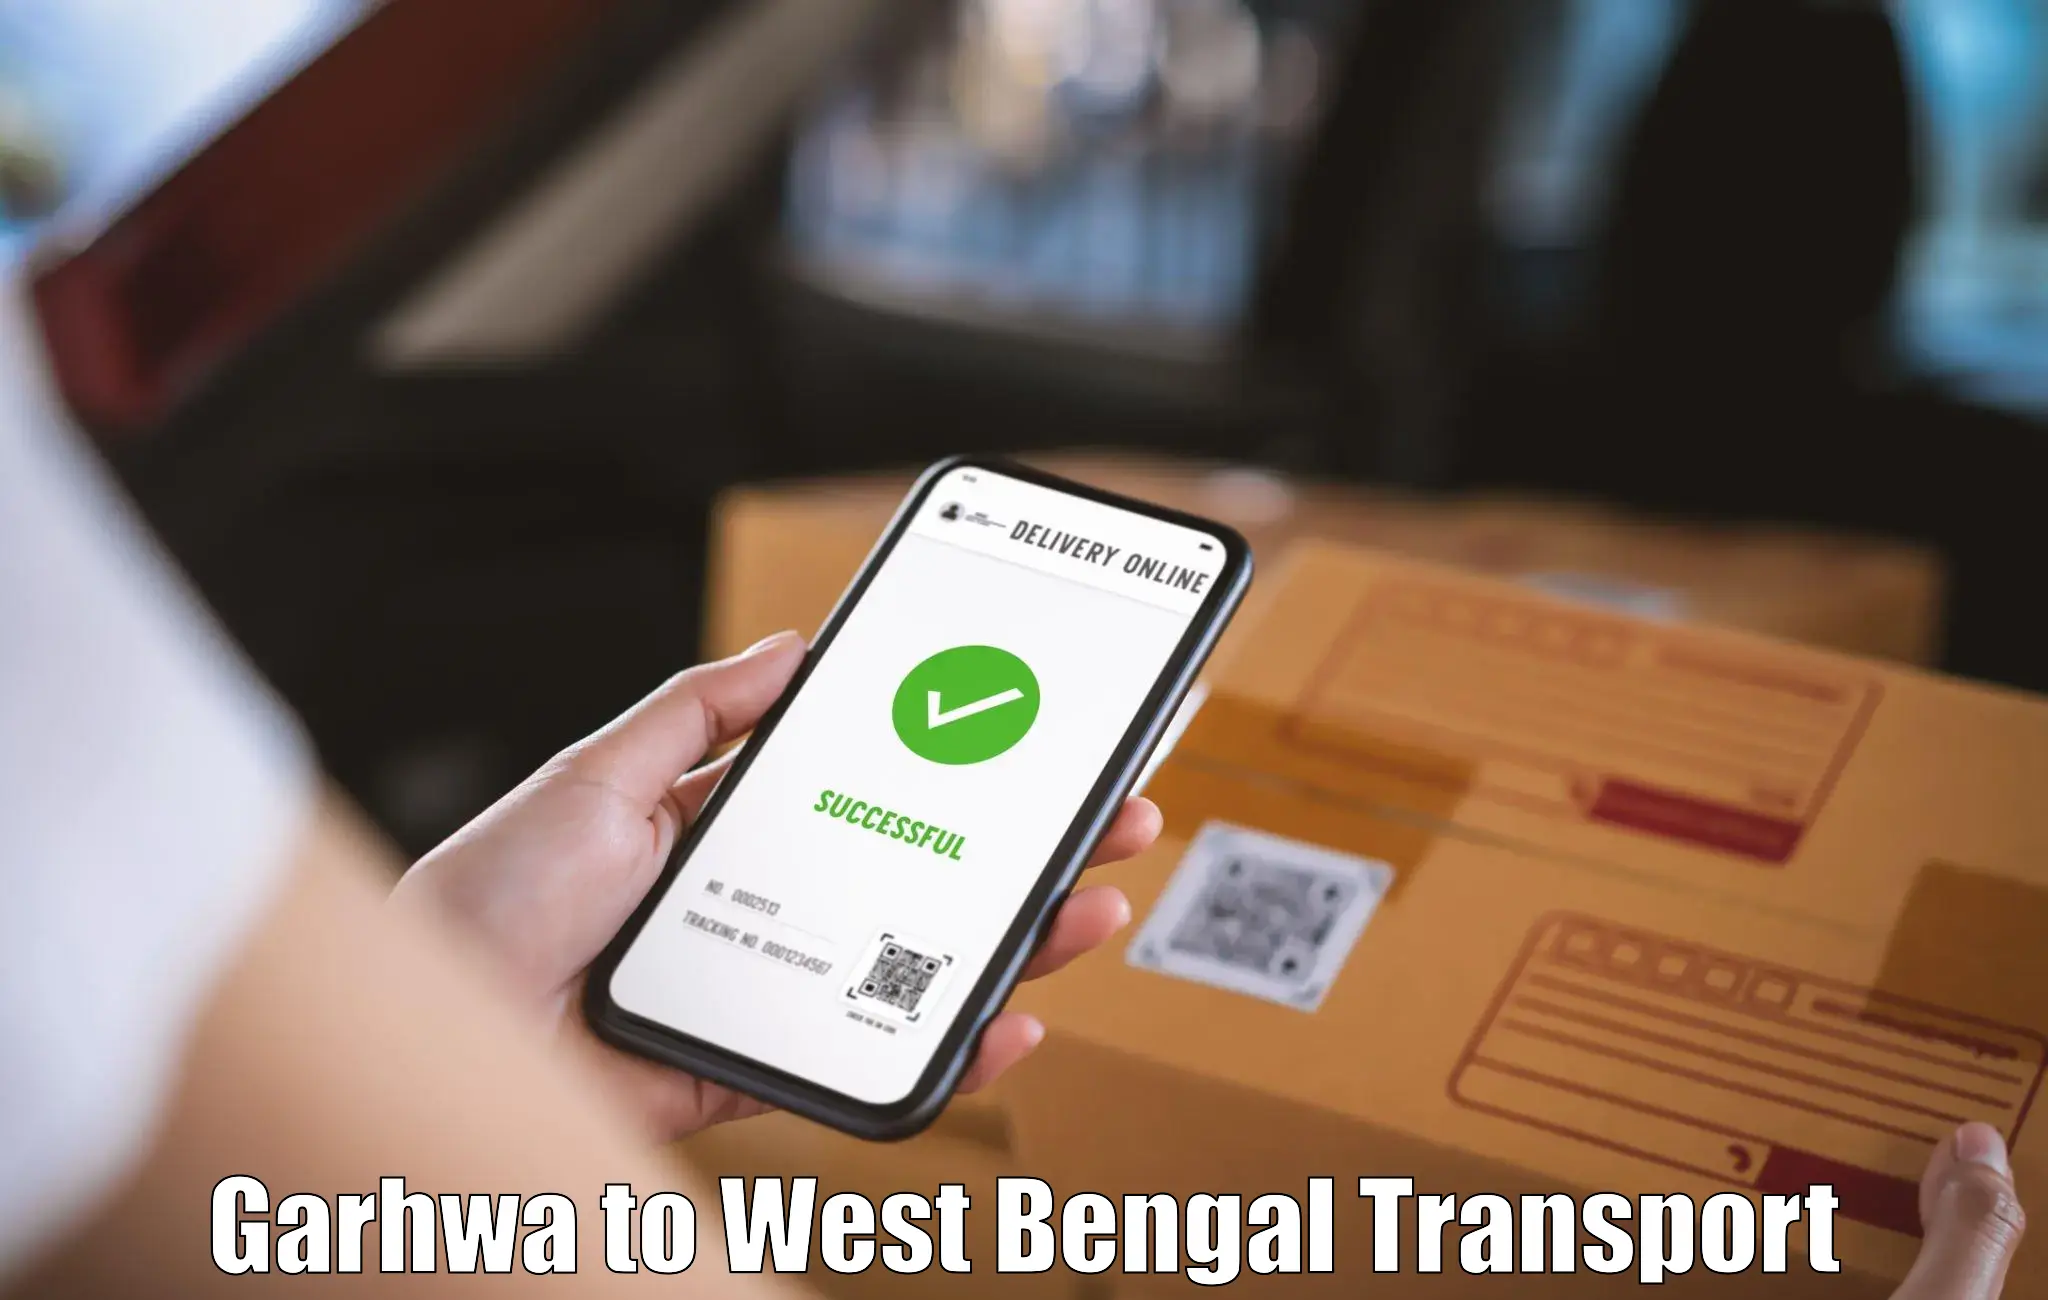 Vehicle transport services Garhwa to Mejia